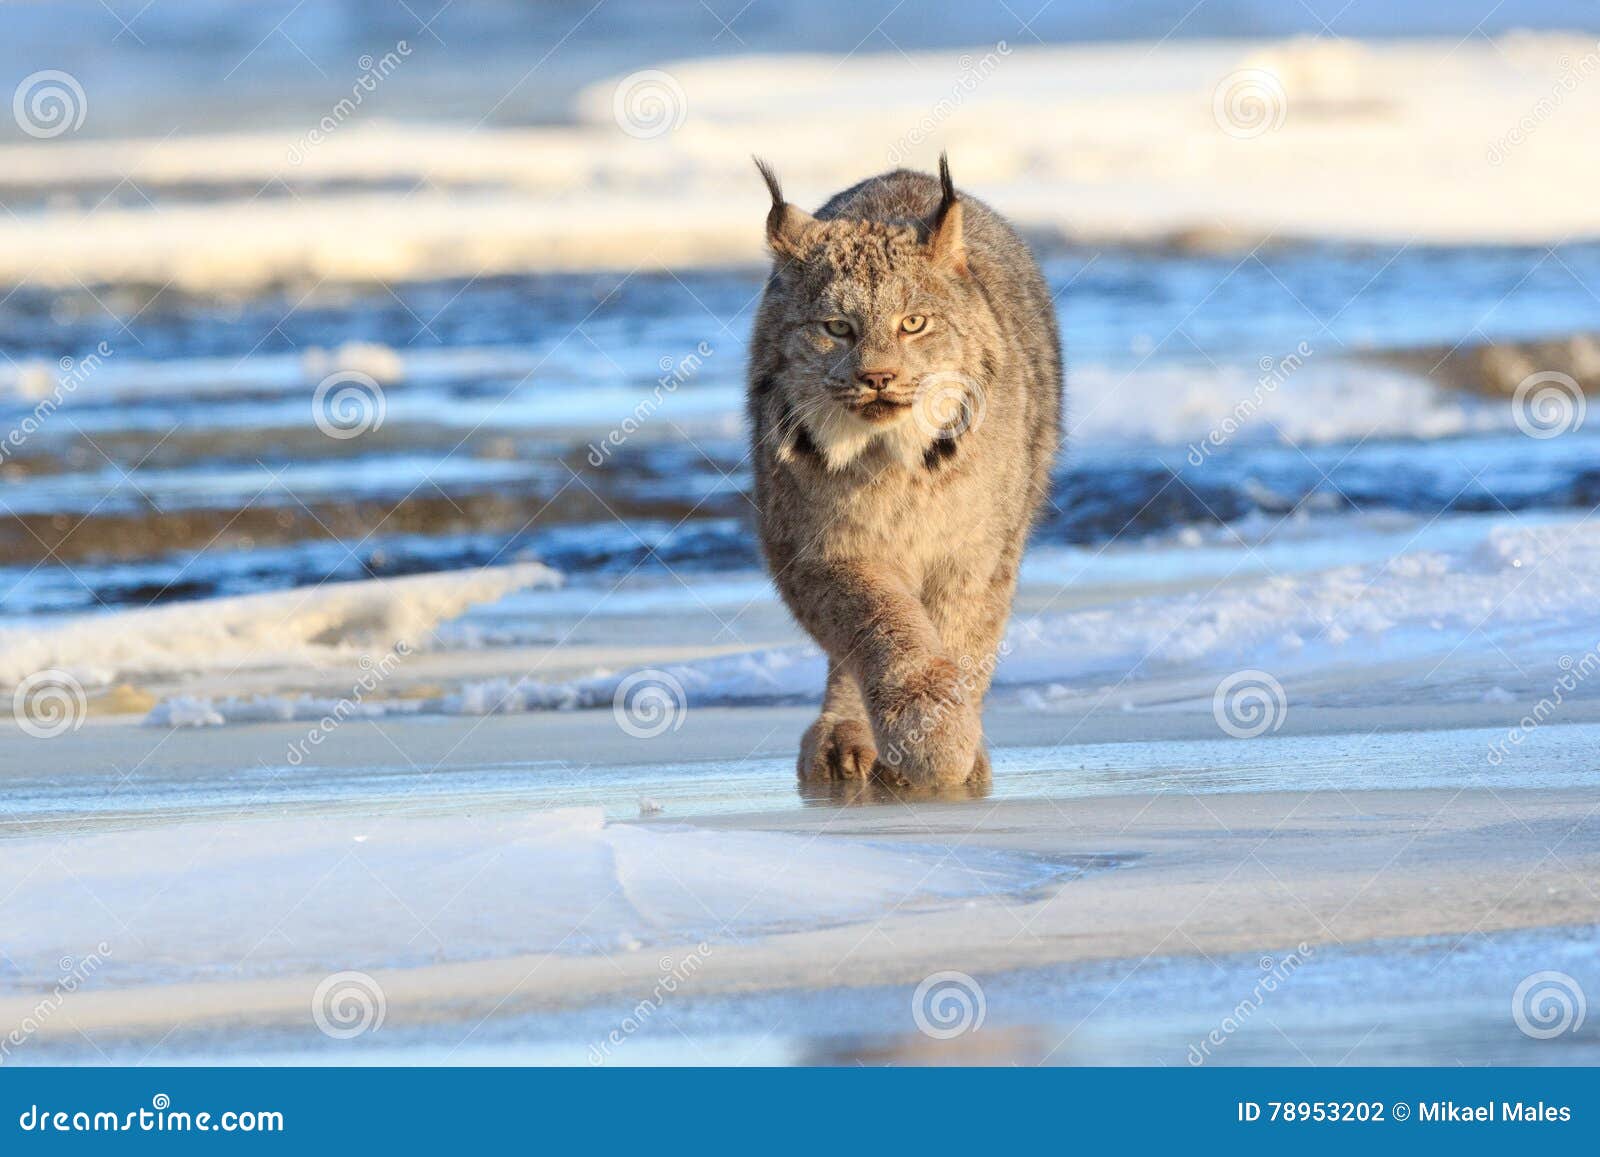 lynx prowling for prey